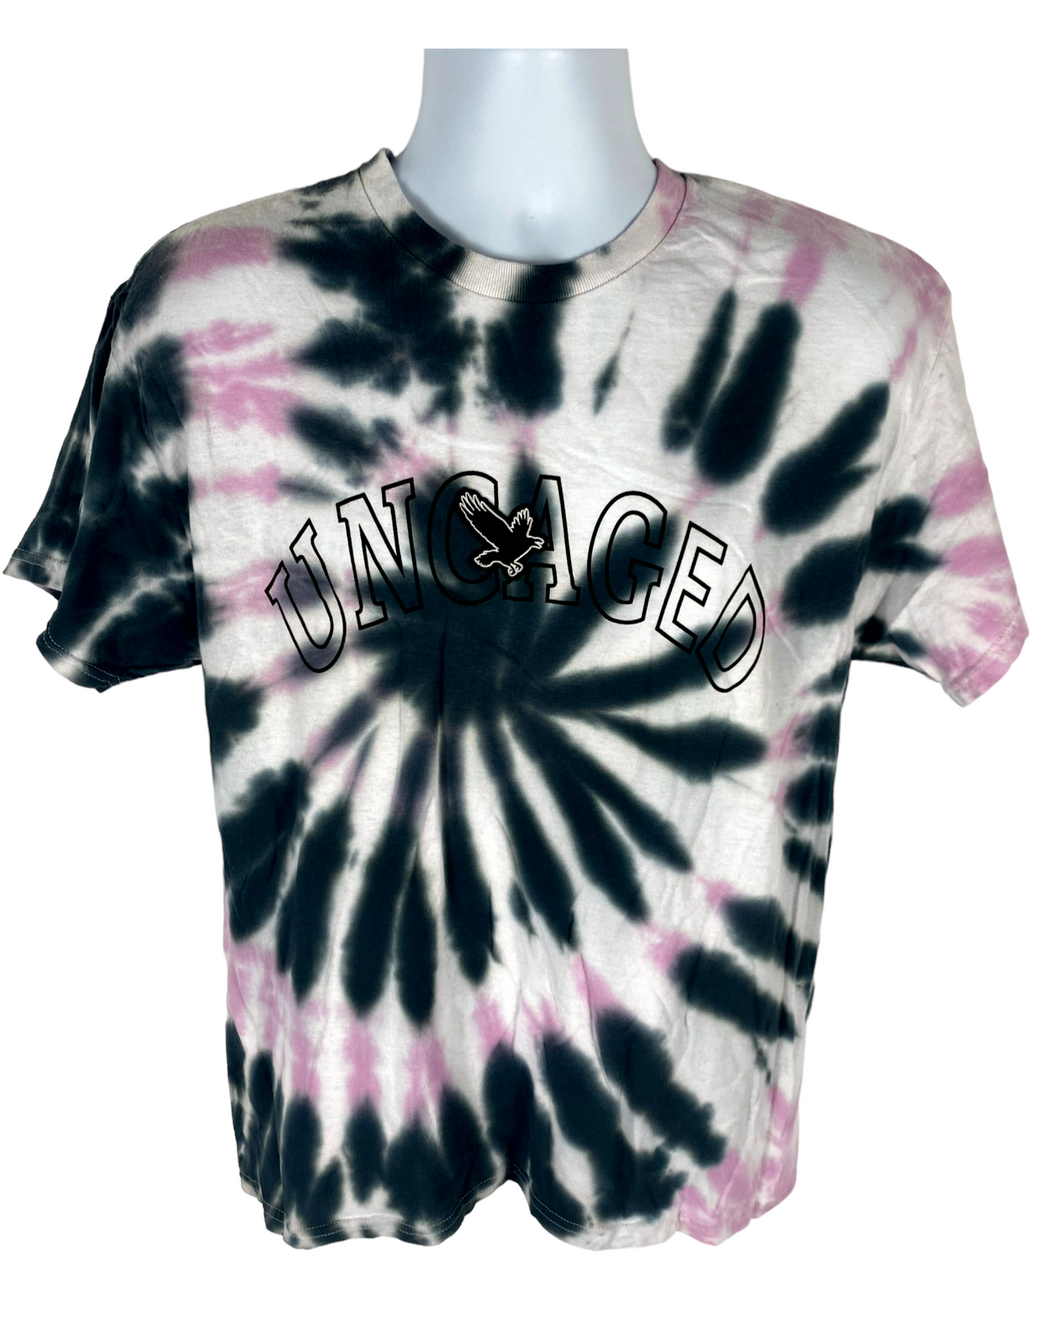 Uncaged Black & Pink Spiral T-Shirt - L